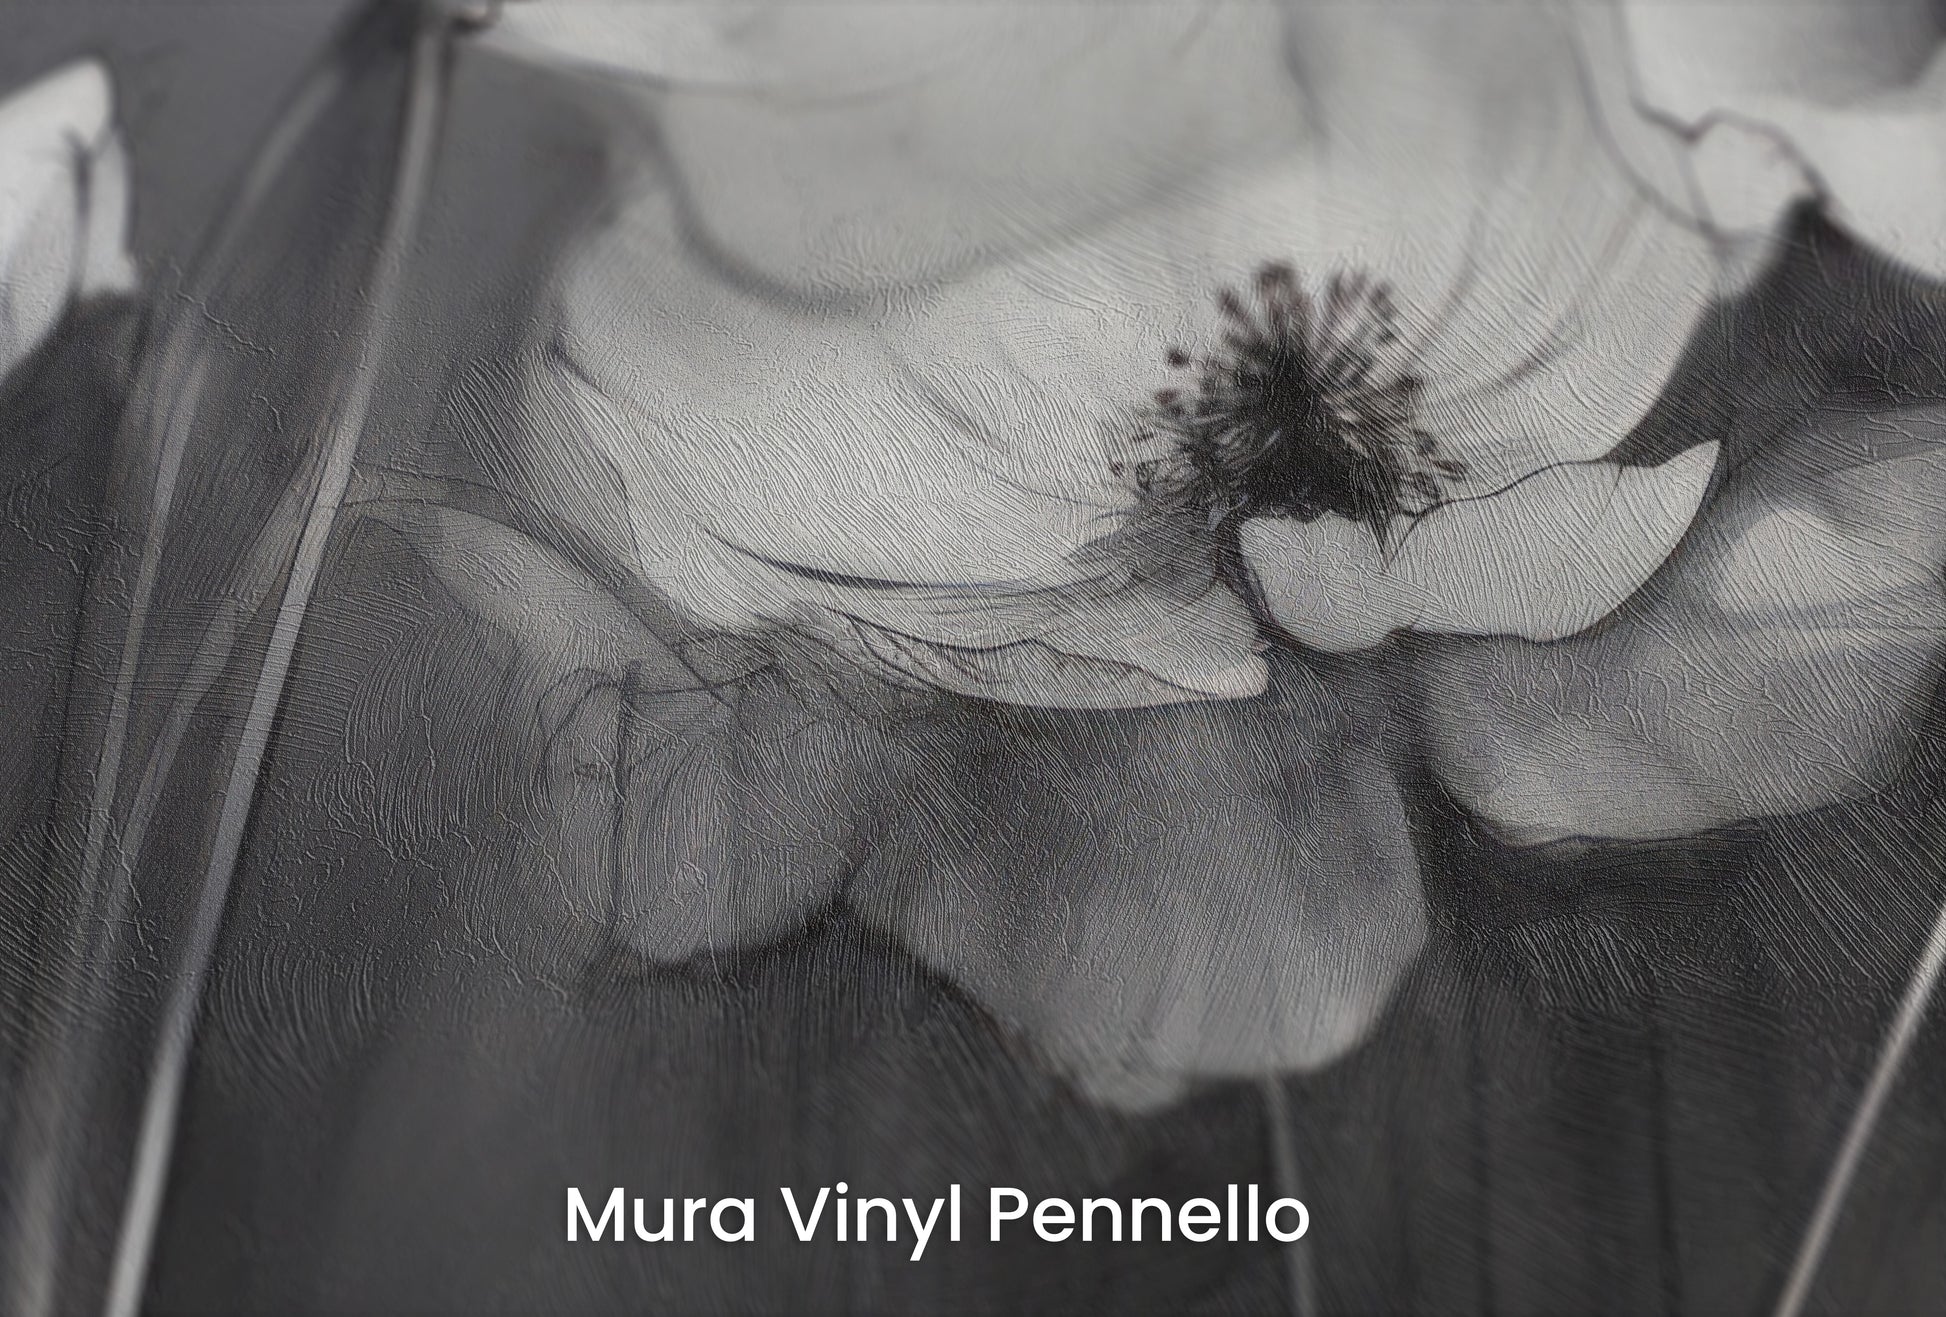 Zbliżenie na artystyczną fototapetę o nazwie SHADOWED PETALS SYMPHONY na podłożu Mura Vinyl Pennello - faktura pociągnięć pędzla malarskiego.